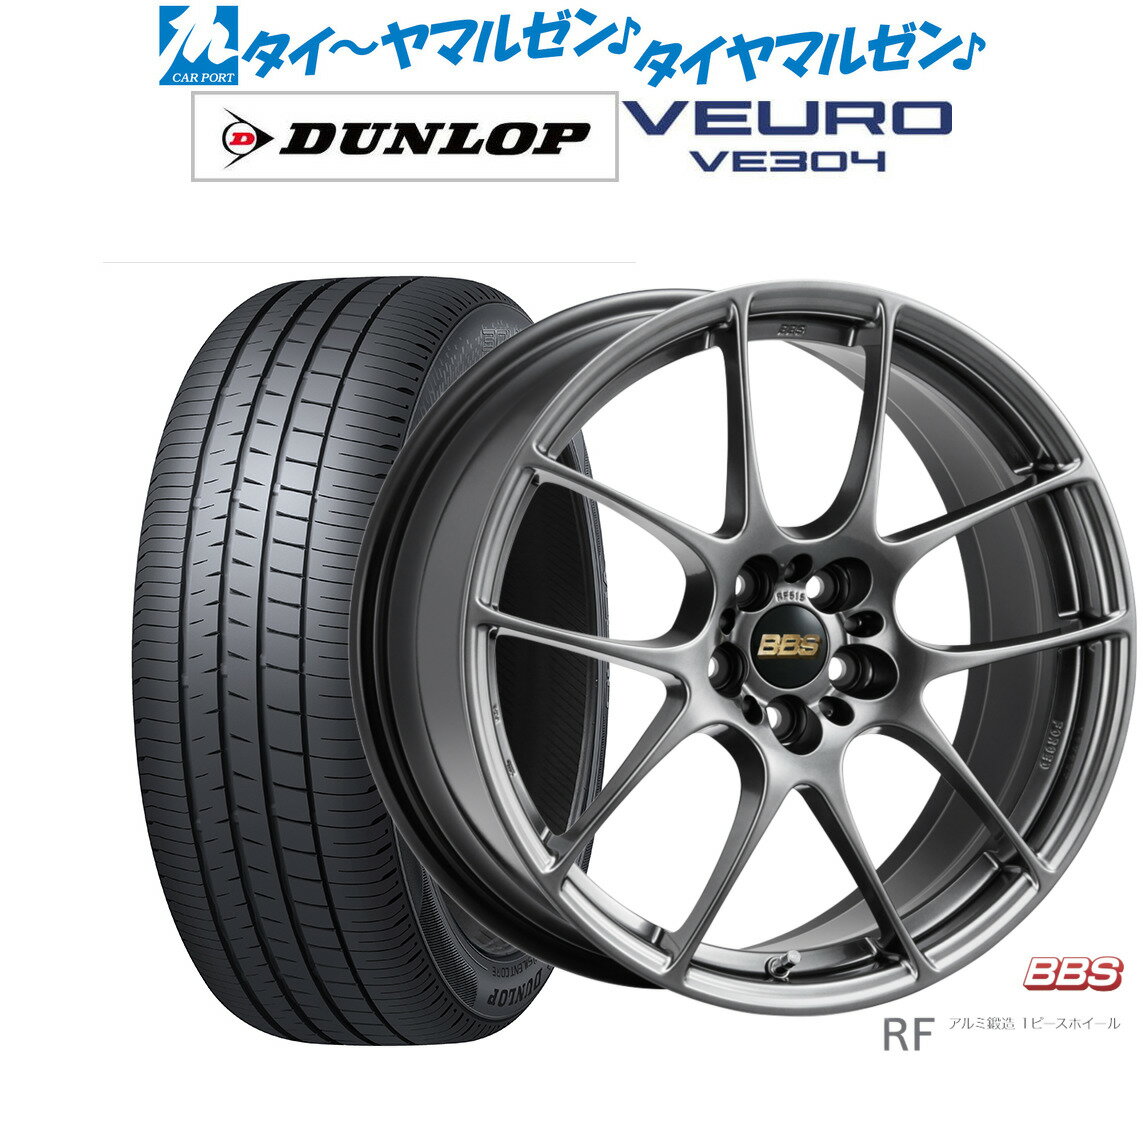 [5/20]割引クーポン配布新品 サマータイヤ ホイール4本セットBBS JAPAN RF18インチ 7.5Jダンロップ VEURO ビューロ VE304225/45R18